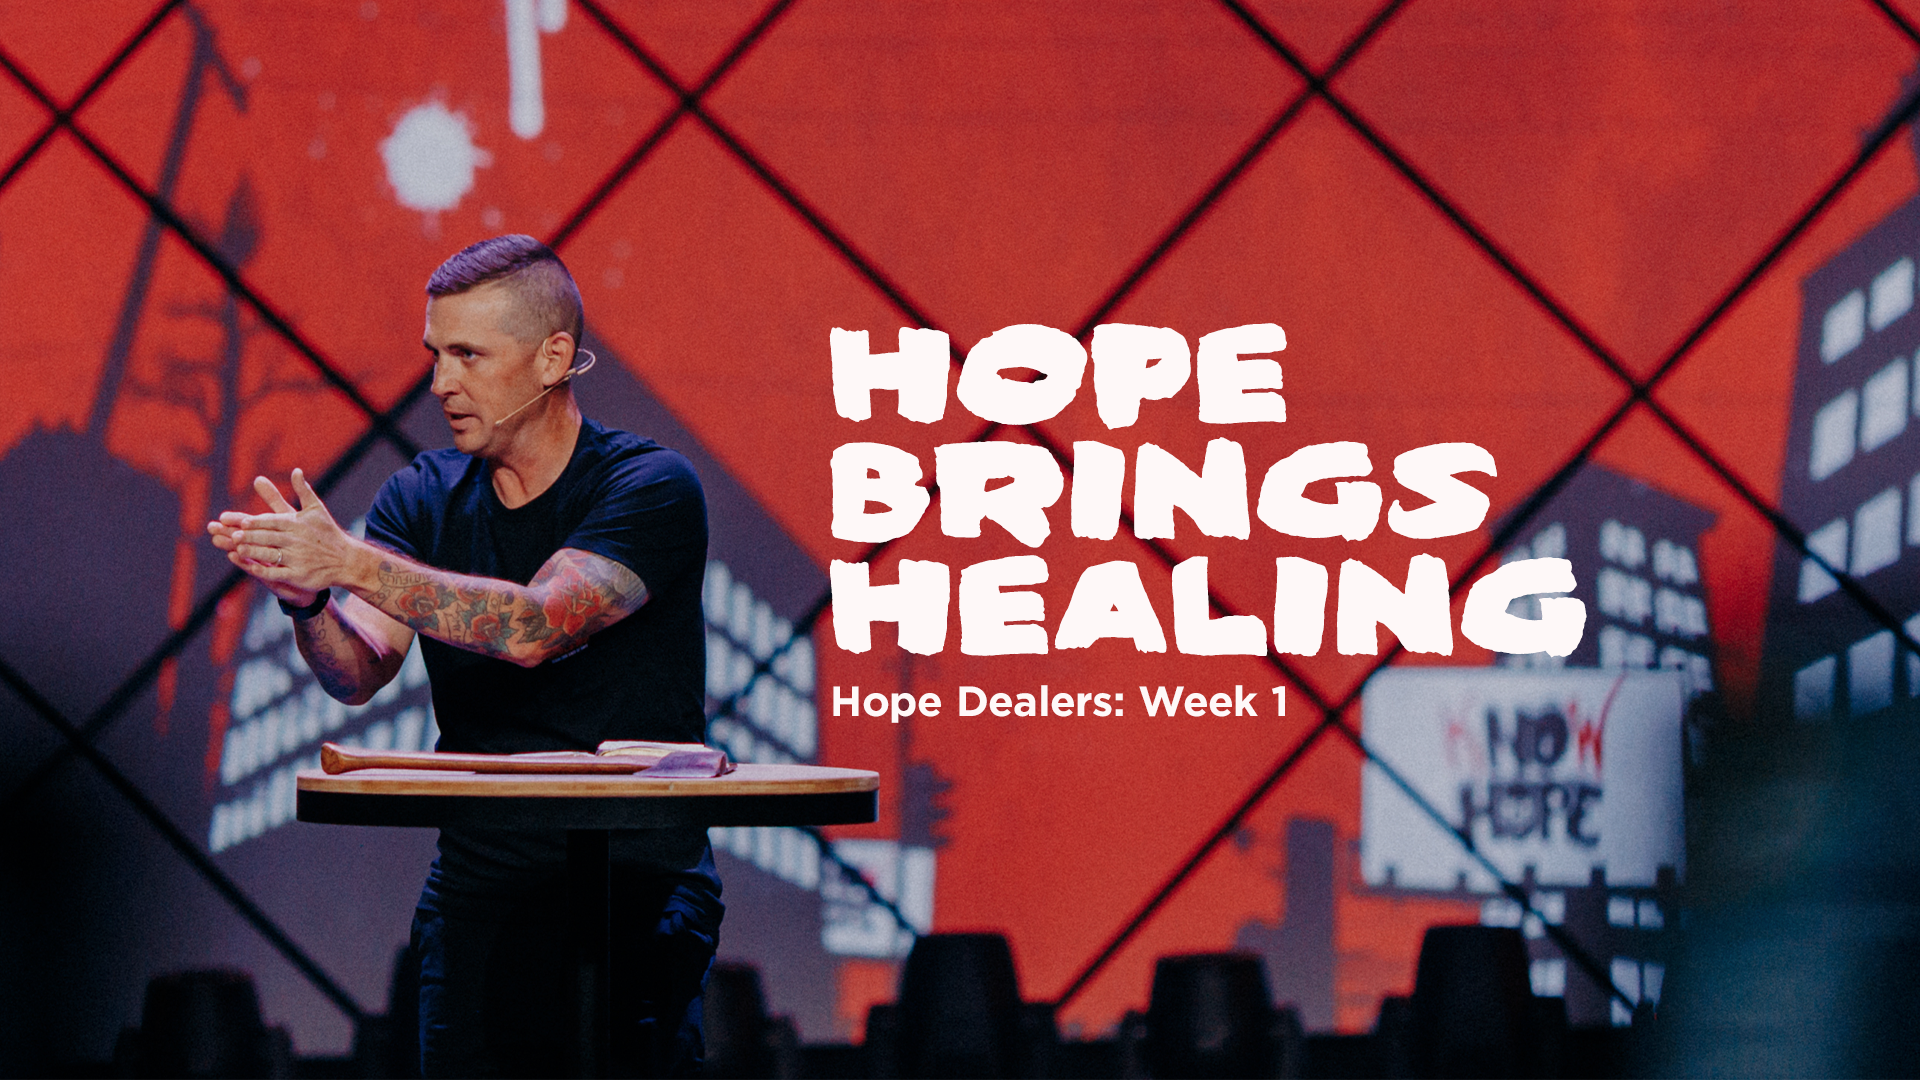 Image: Hope Brings Healing